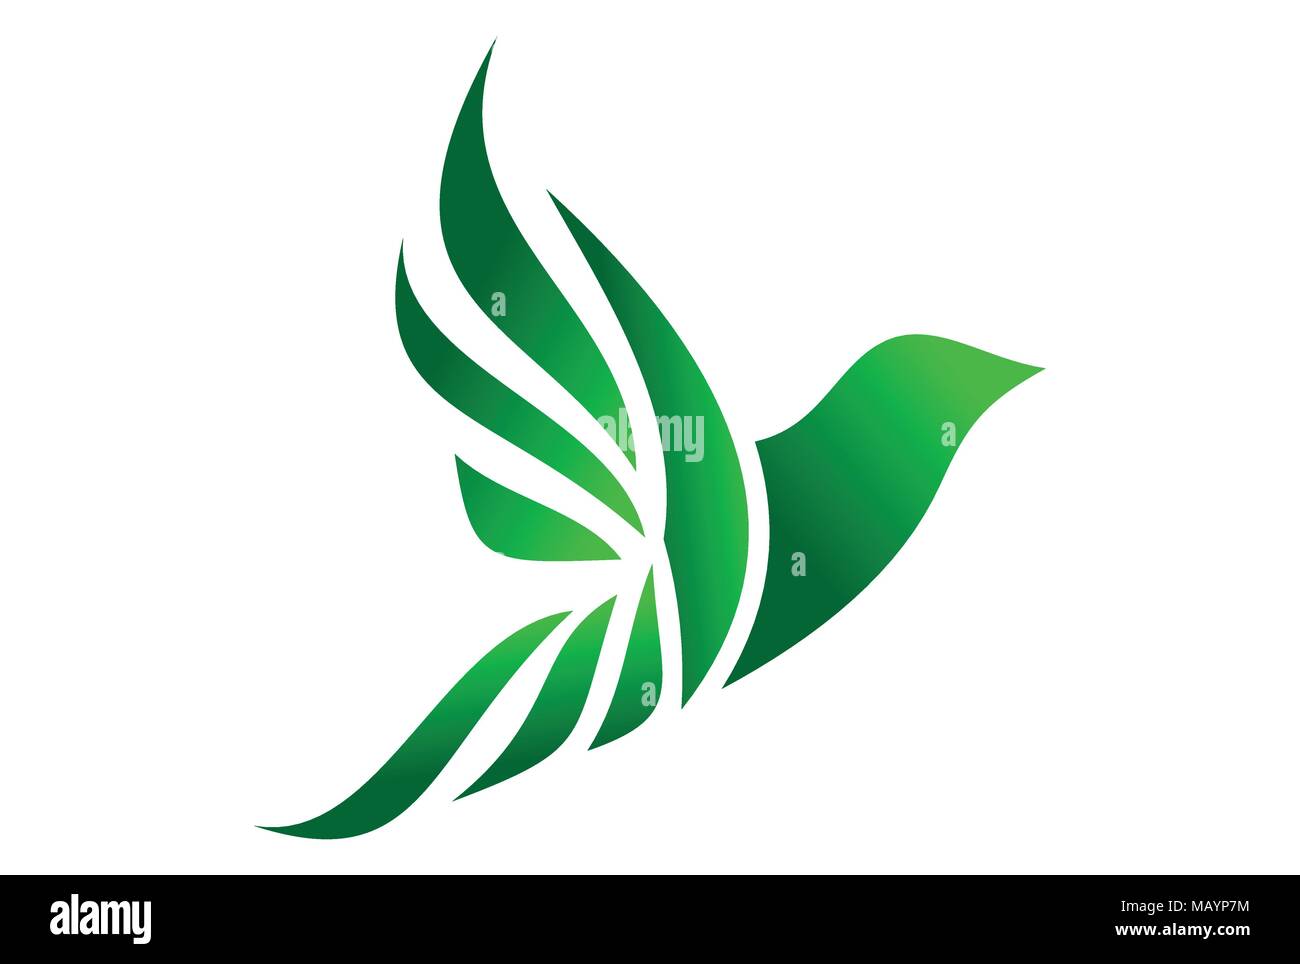 icona astratta del logo dell'uccello di volo Illustrazione Vettoriale